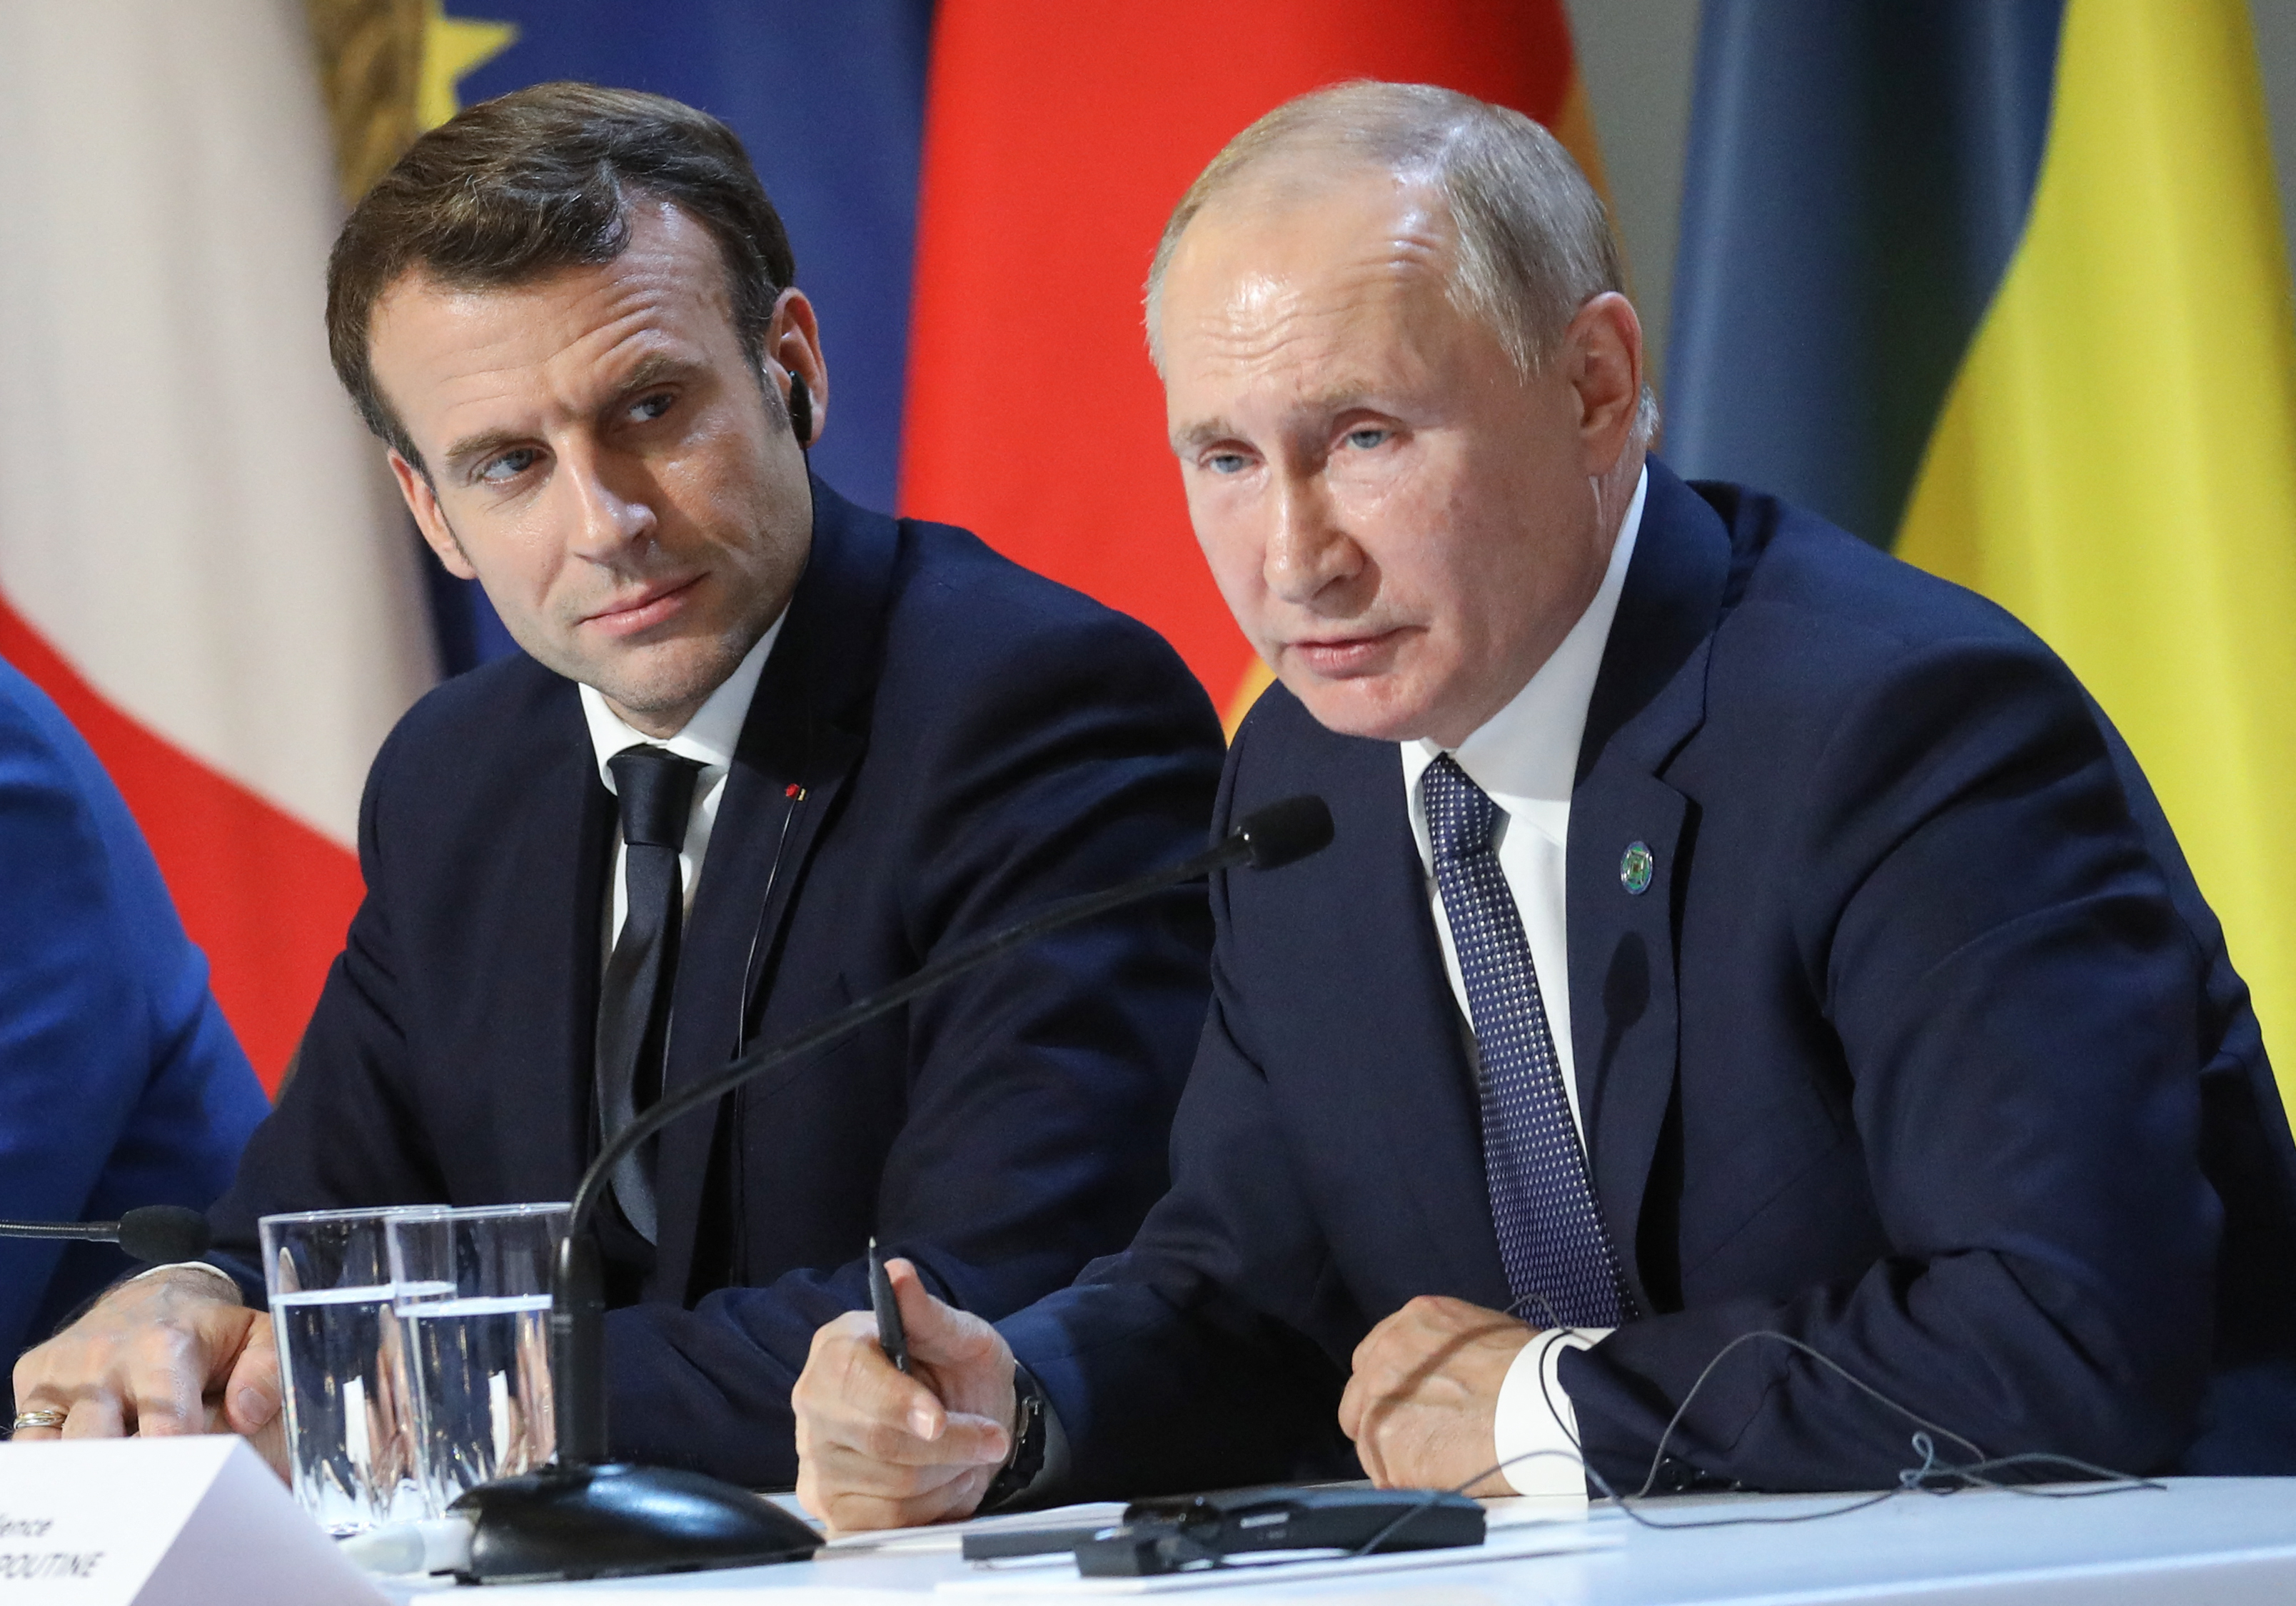 Emmanuel Macron, ici avec Vladimir Poutine en 2019 à Paris après un sommet sur l'Ukraine) a accusé mercredi Moscou de mener un «nouveau type de guerre hybride» dans le monde. AFP/pool/Ludovic Marin